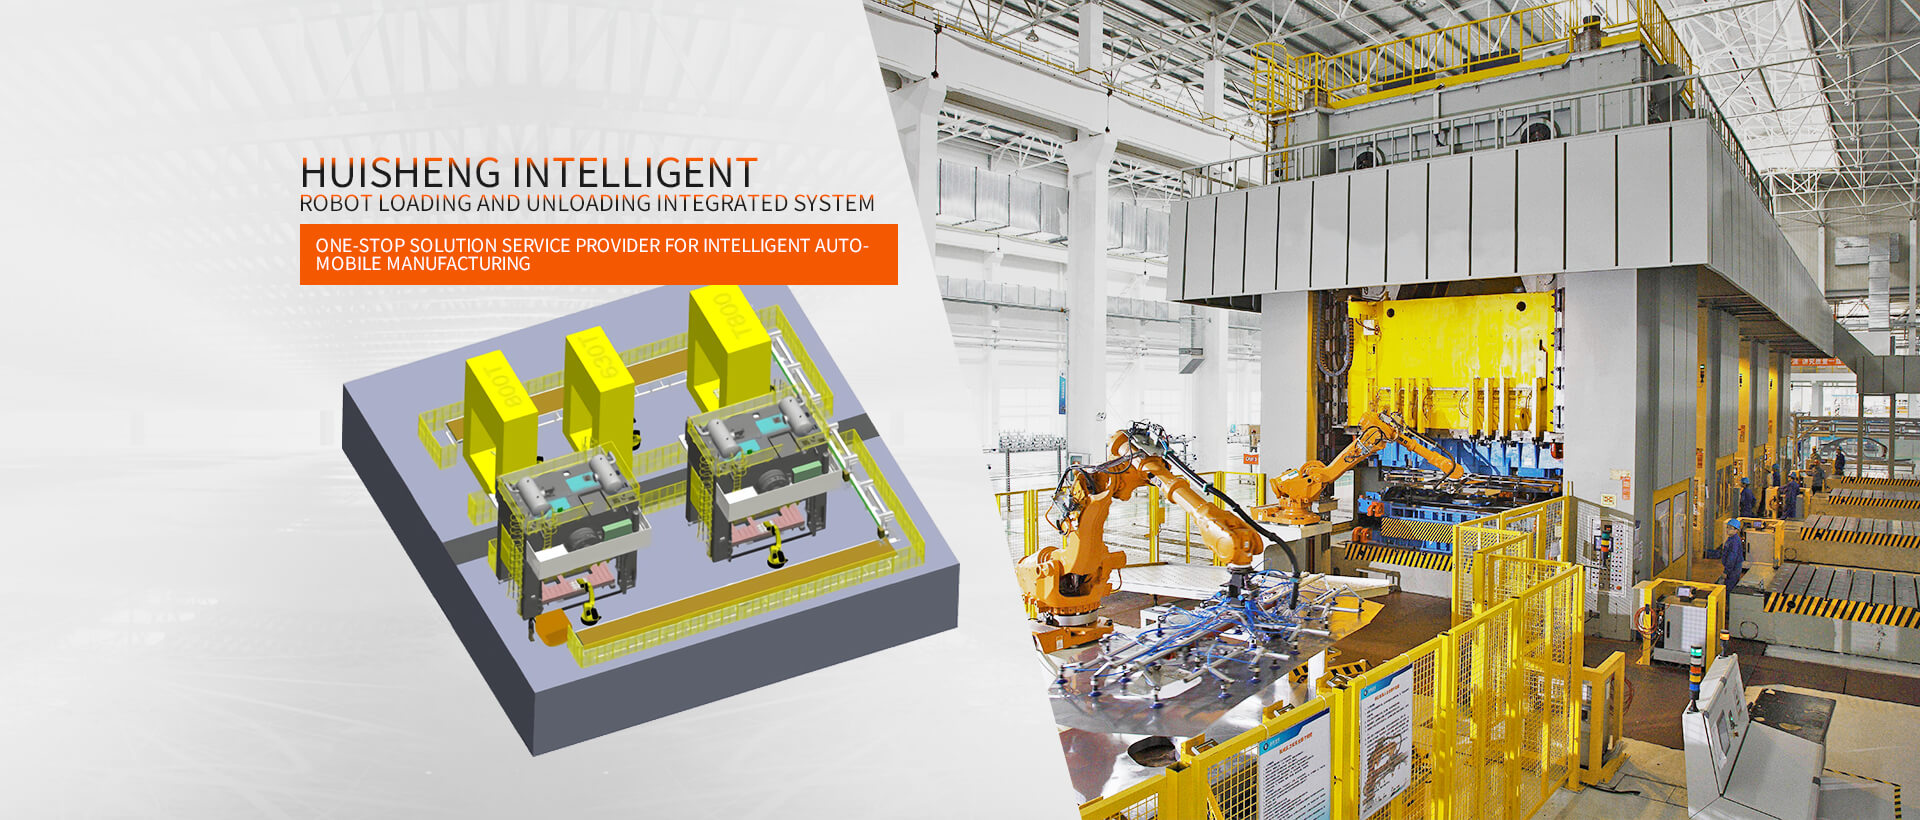 Huisheng Intelligent Industrial Robot